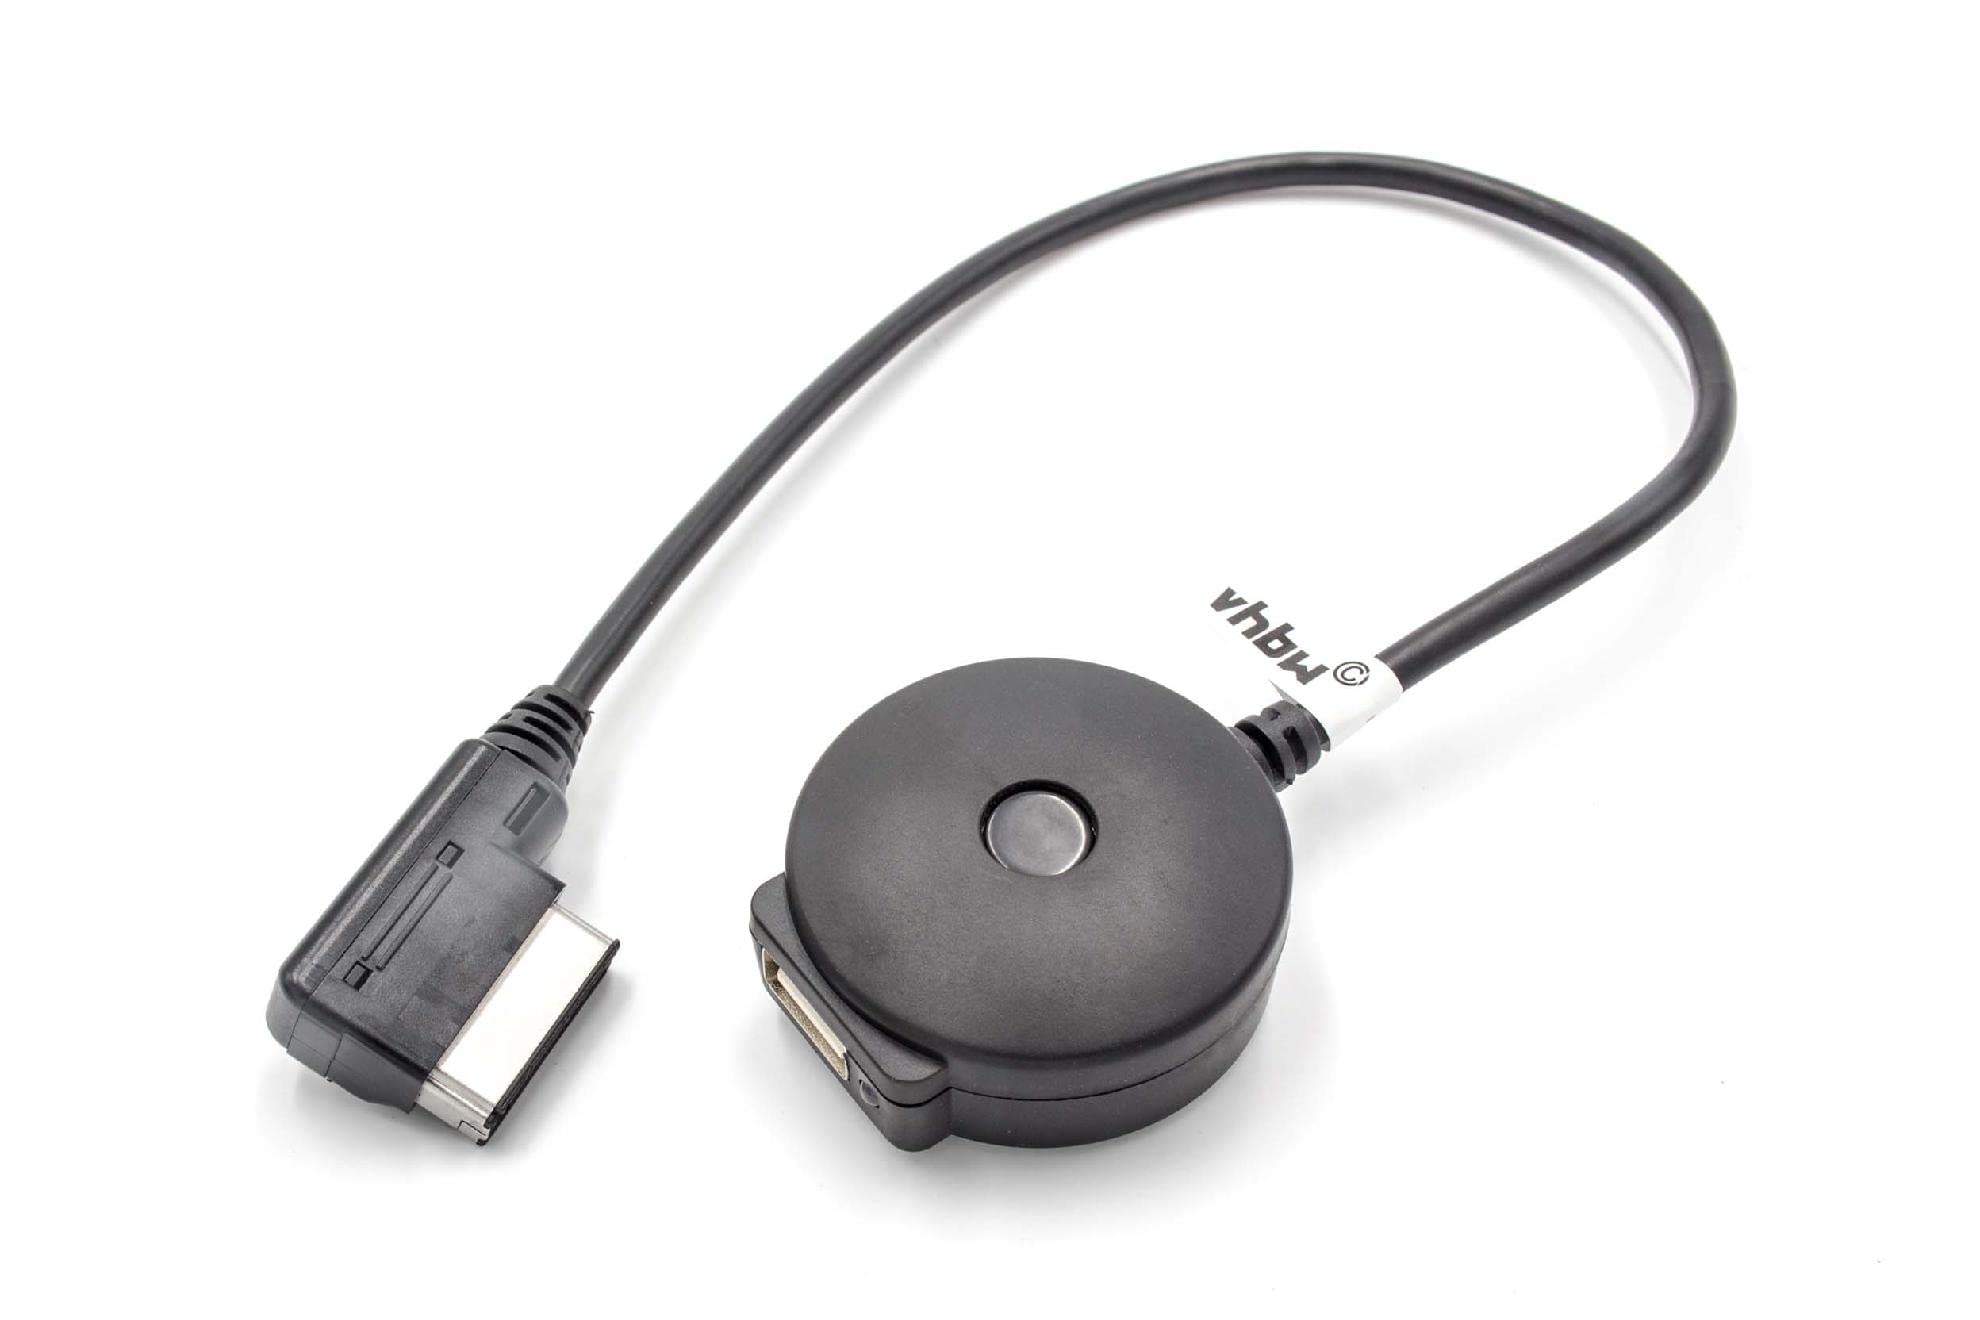 vhbw Bluetooth-Adapter USB, MMI-AMI kompatibel mit Auto, KFZ Audi A1, A3, A4, A5, A6, A8, Q5, Q7, TT